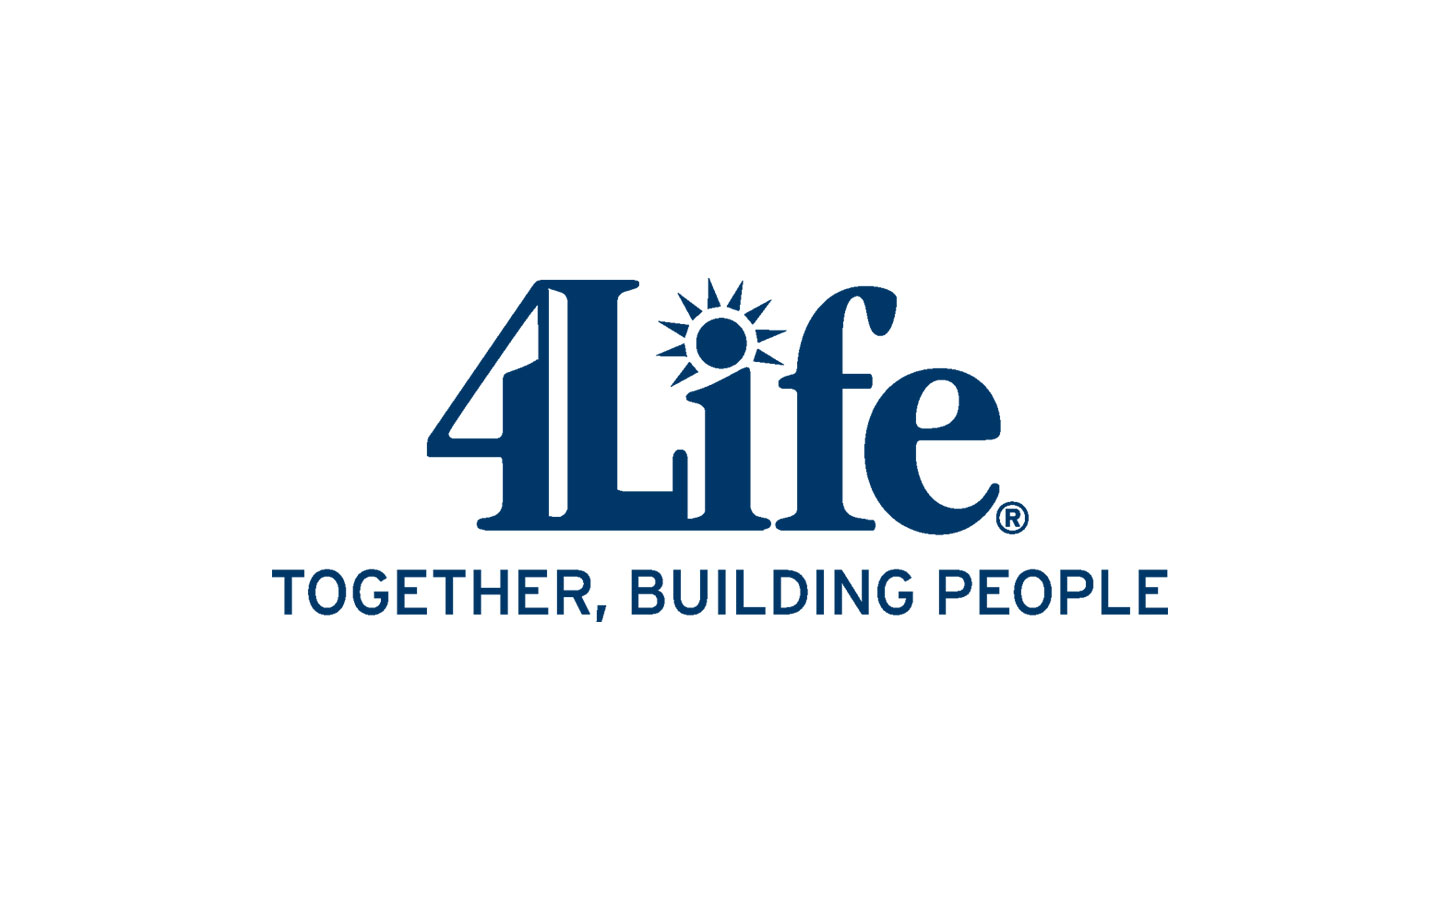 Shop 4 life. 4life. 4life research. 4life research логотип. Бизнес 4life сетевой.